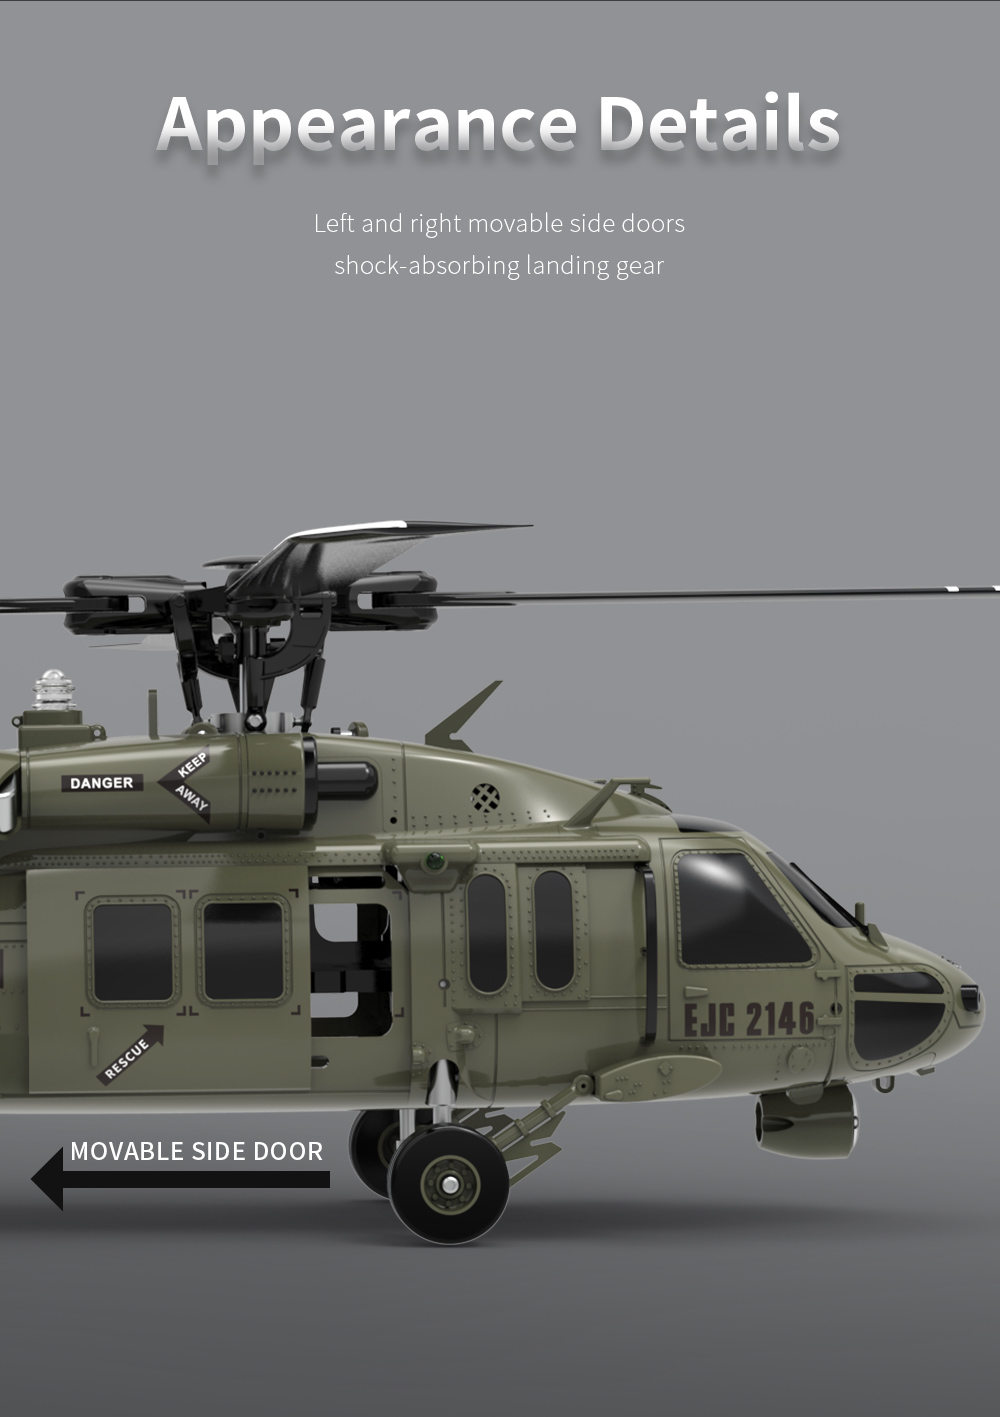 UH-60 Black Hawk RC Military Helicopter (TH-57 Sea Ranger, MH-65 DolphinMH-65 Dolphin, MH-60 JayhawkMH-60 Jayhawk)